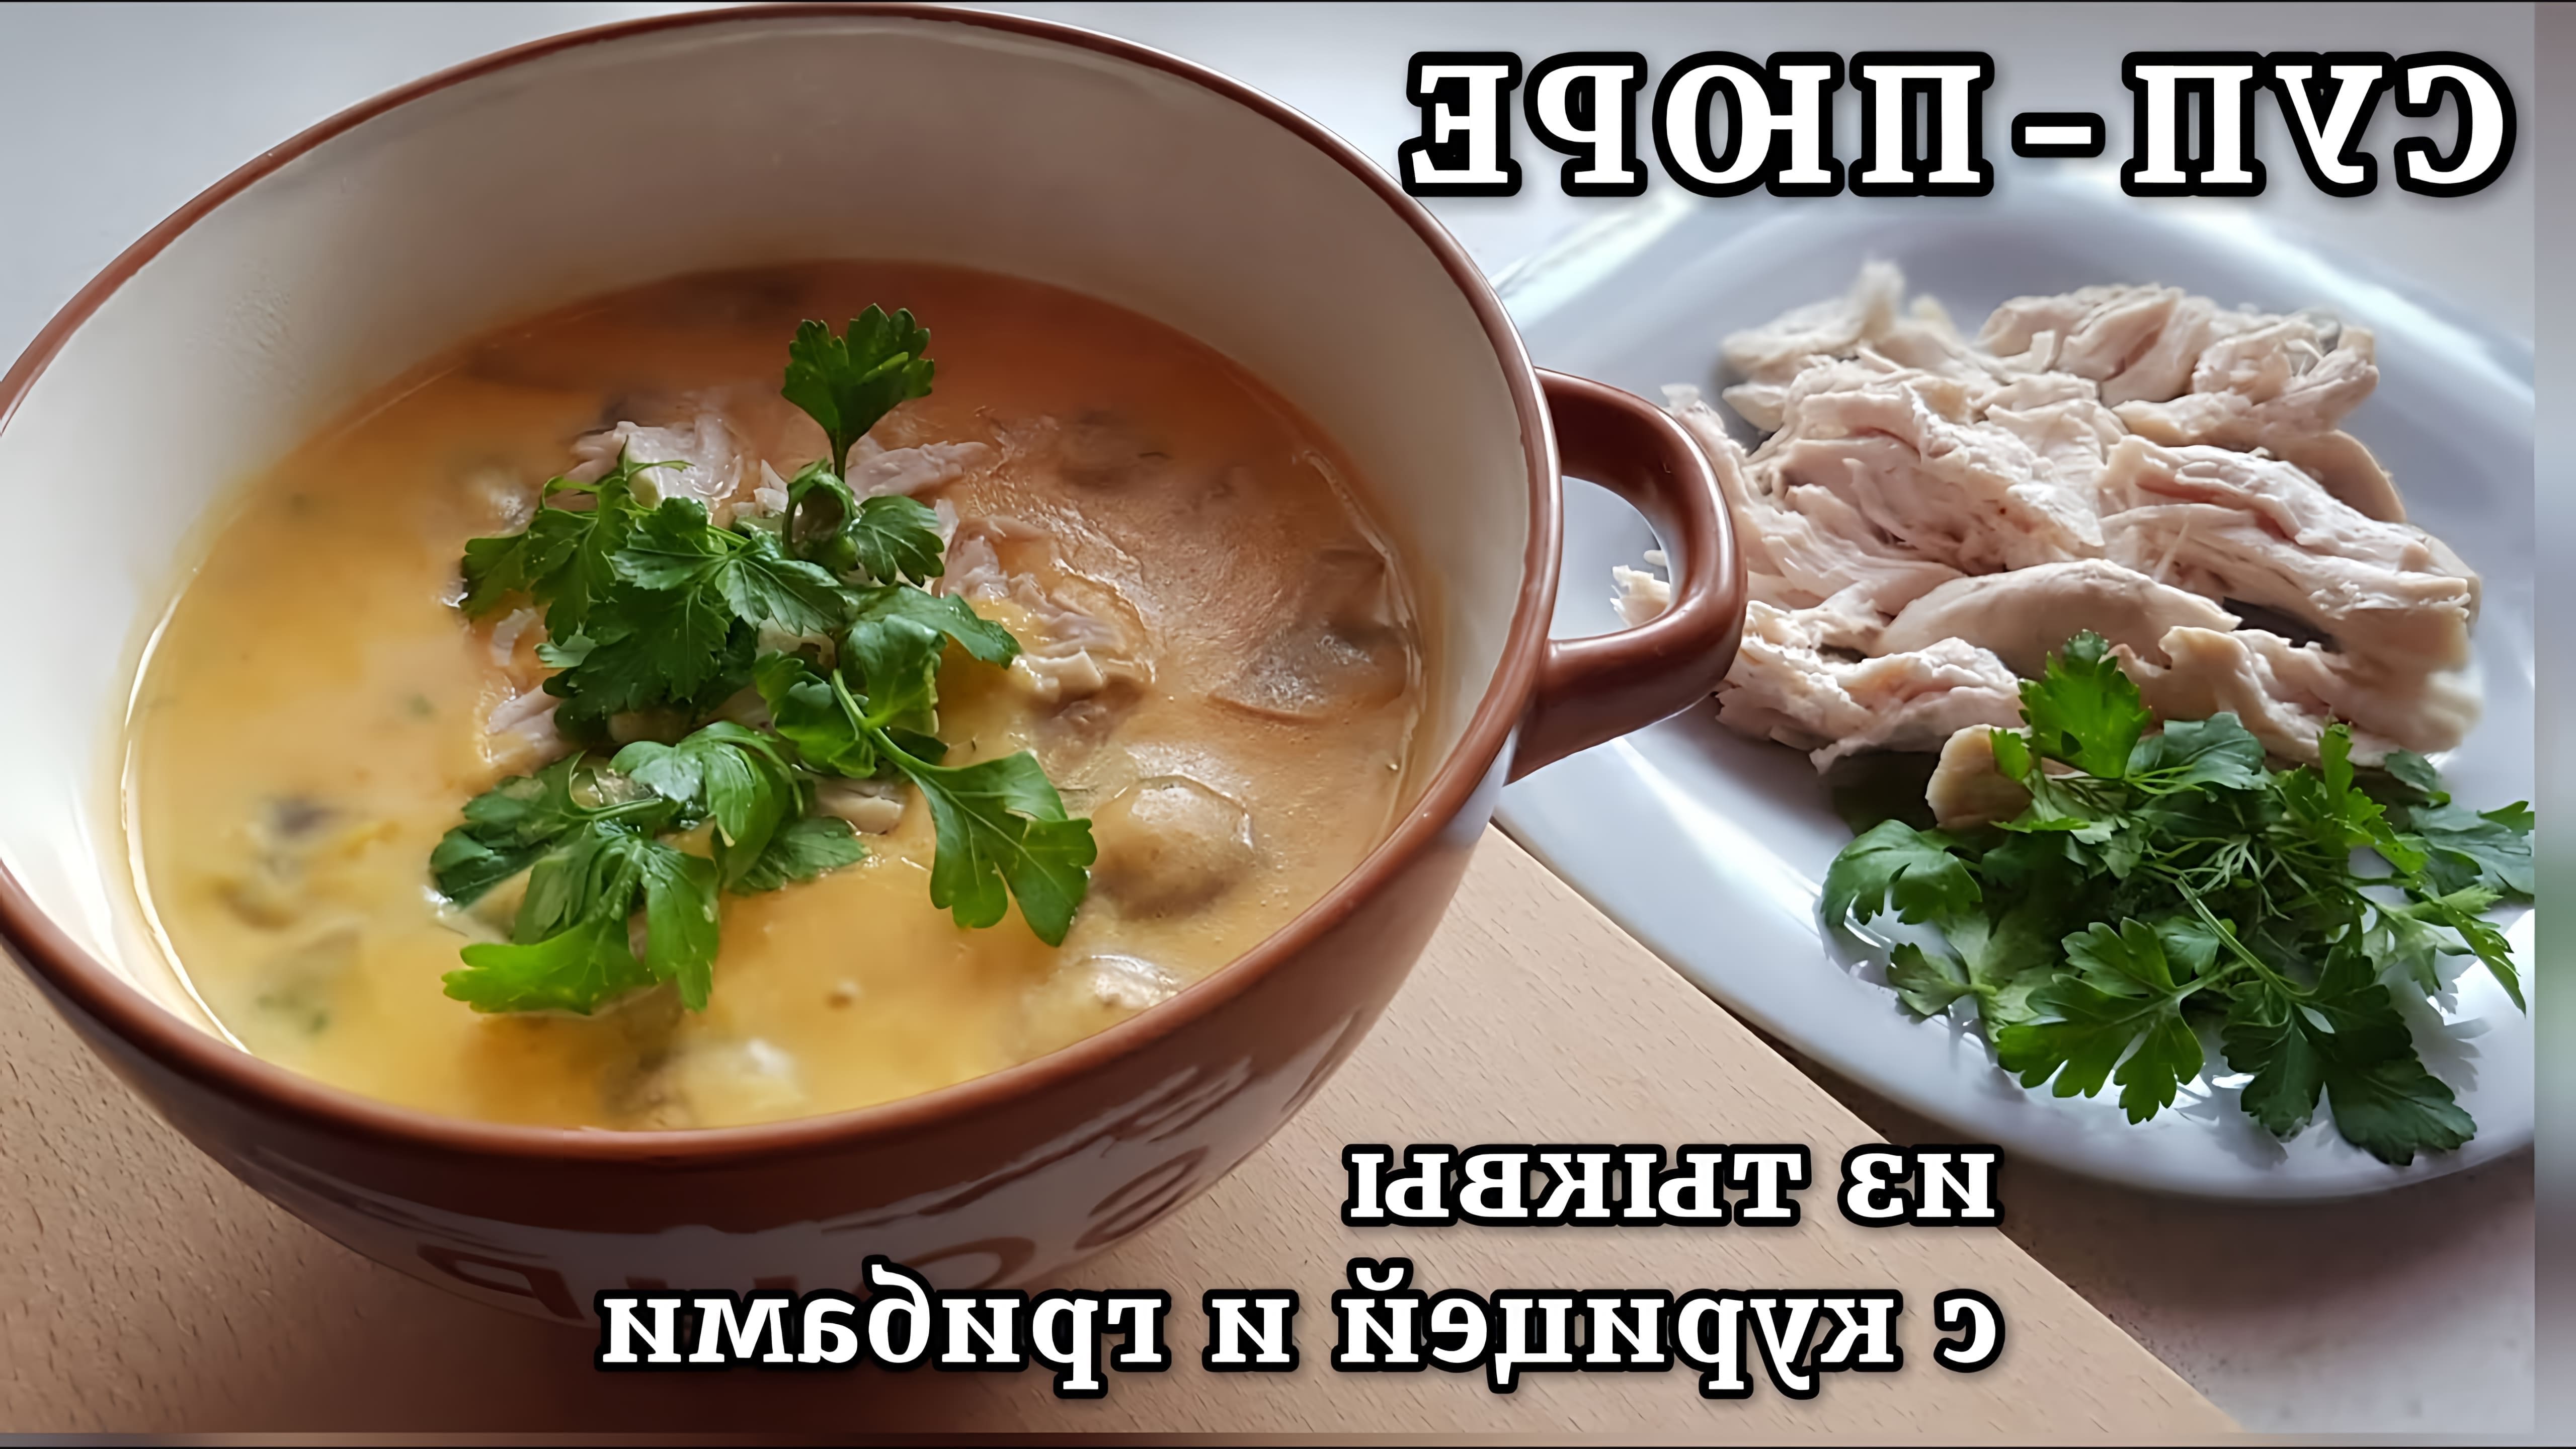 В этом видео демонстрируется процесс приготовления тыквенного супа с грибами и курицей